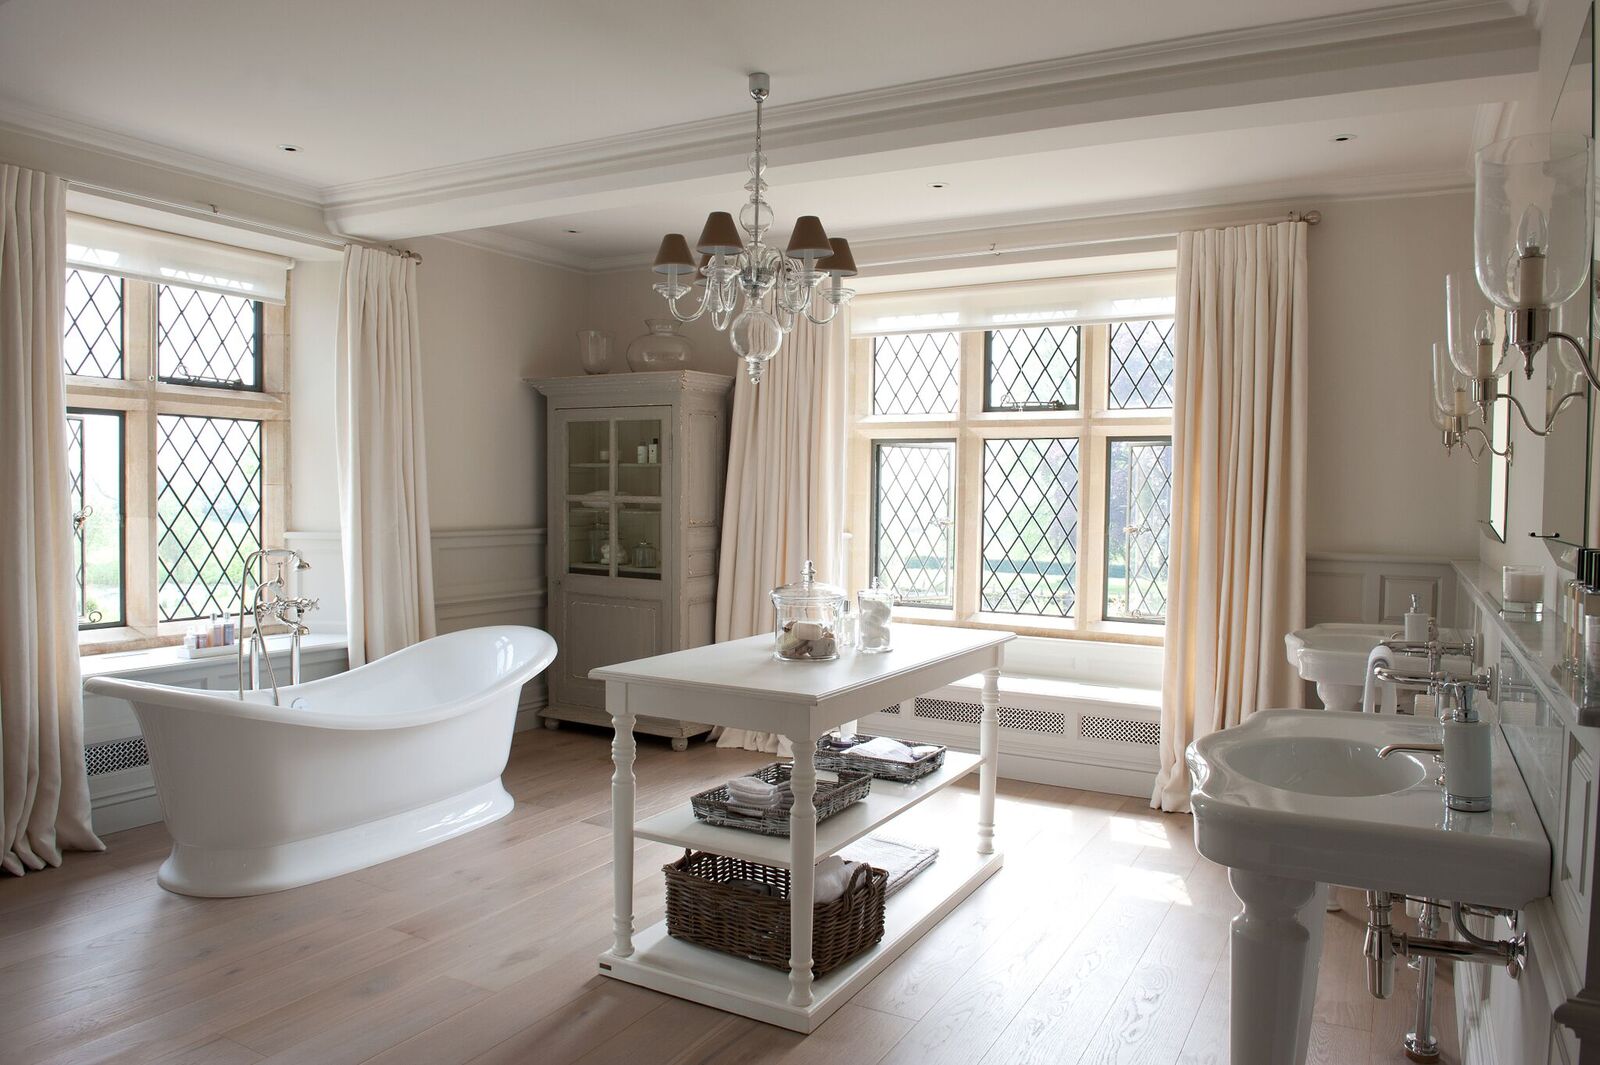 A white bathroom with a bathtub and sink showcasing elegant Bathroom design.